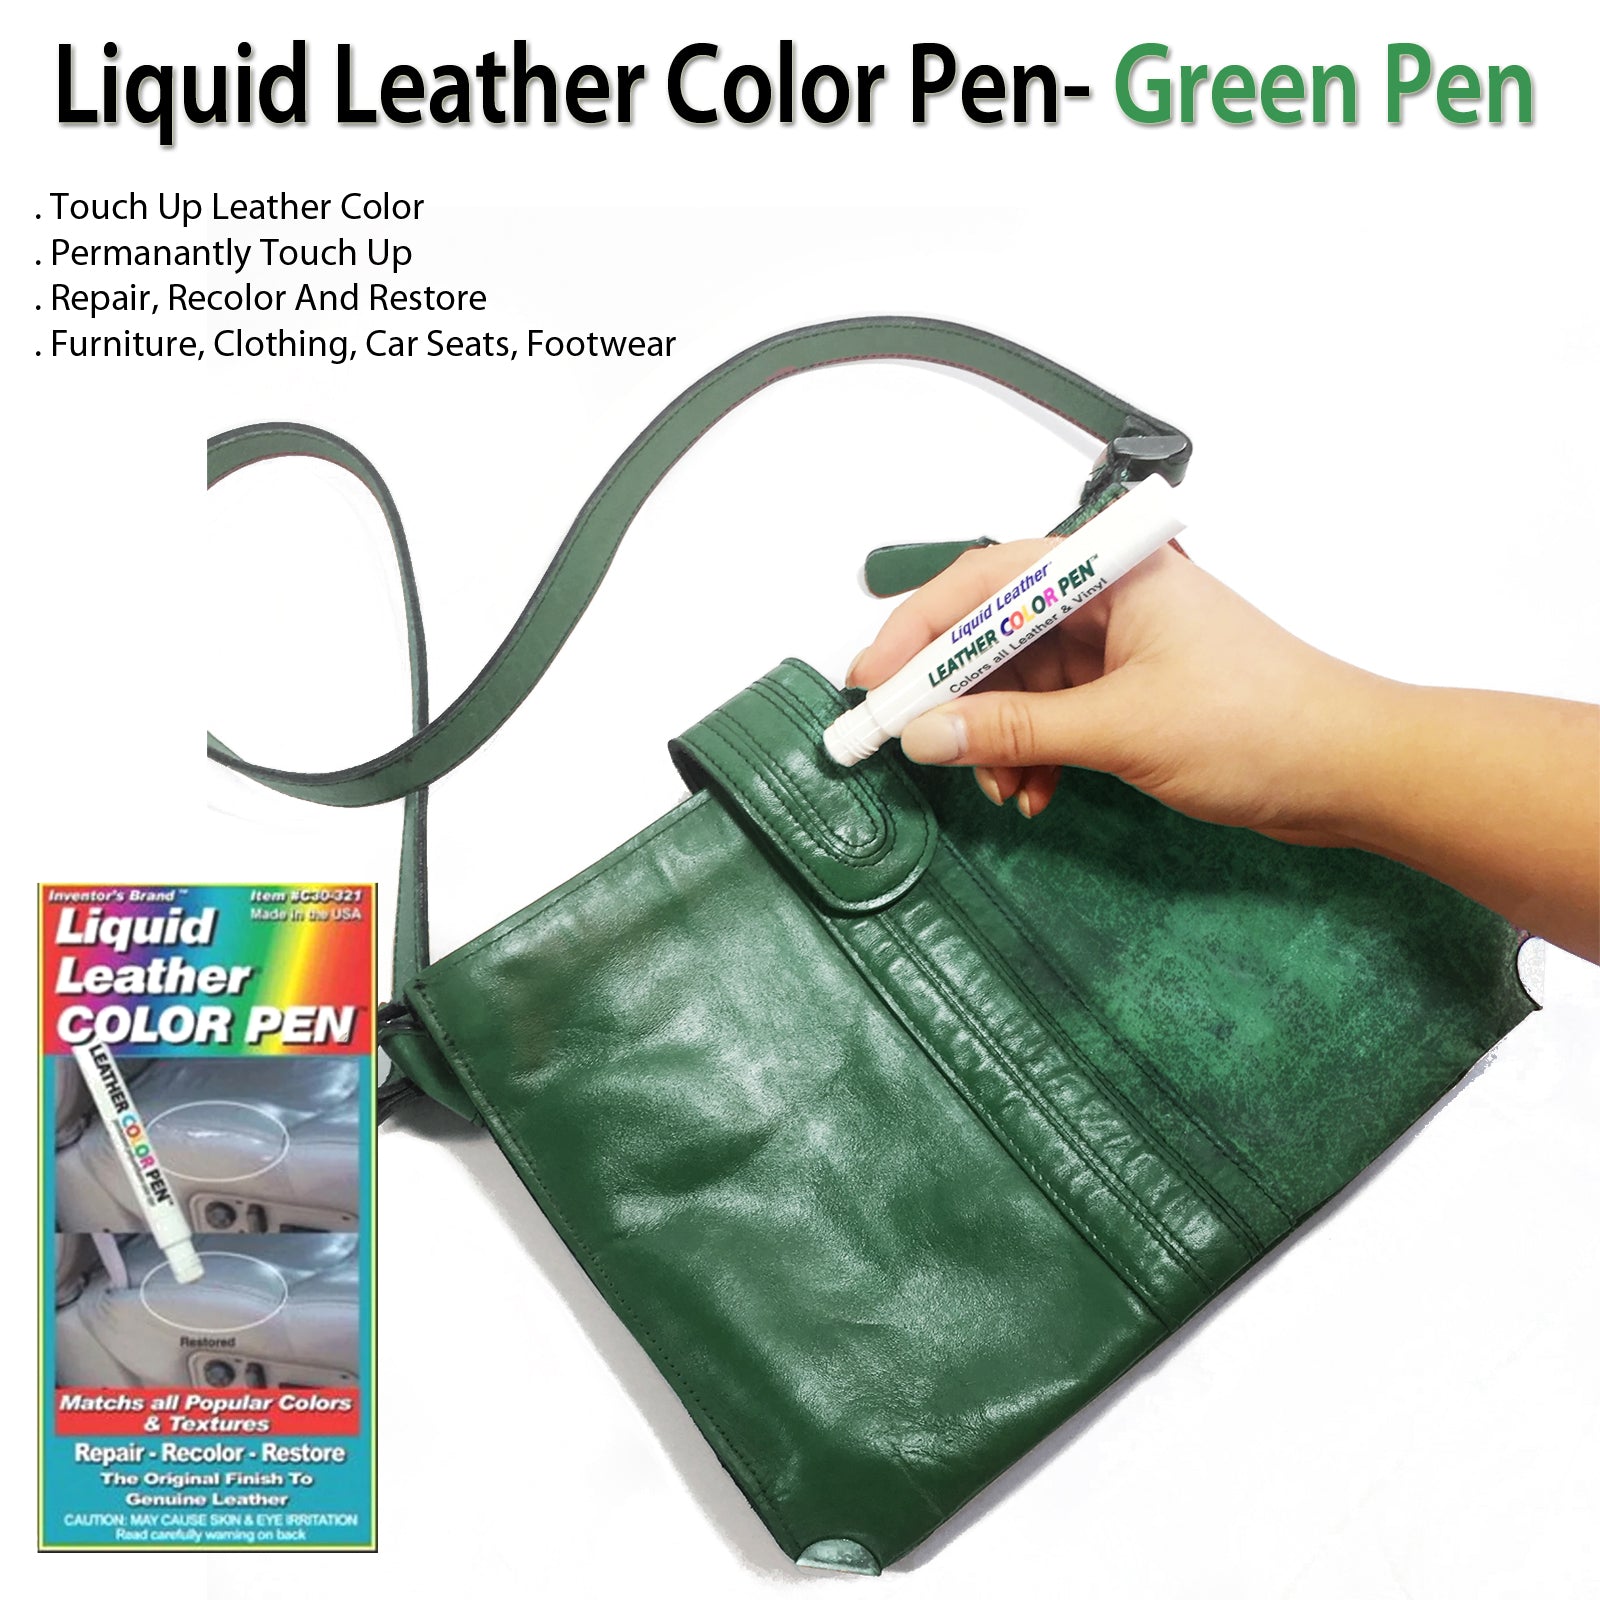 Liquid Leather Color Pen Repair Recolor Green Pen